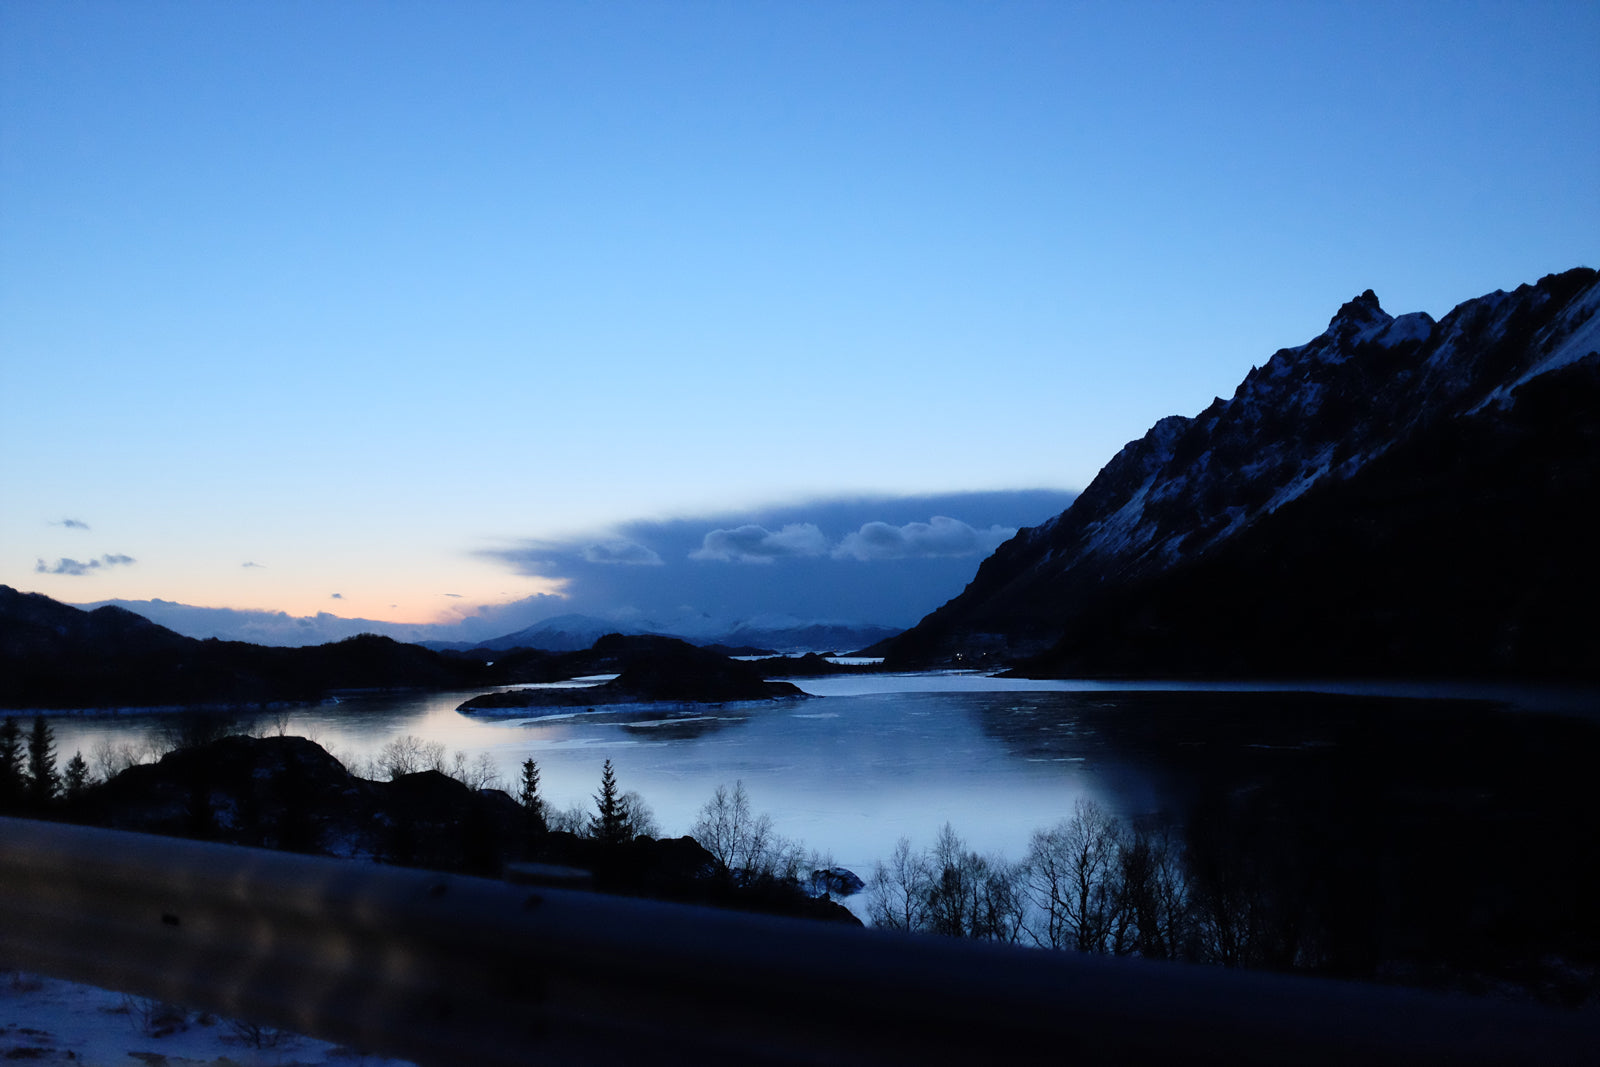 Mission Workshop Test sur le terrain : ESCAPE NORTH - Une aventure à travers le cercle polaire - Finlande, Norvège, Suède - 24 heures de route. Photos de Janne et Samu Amunet